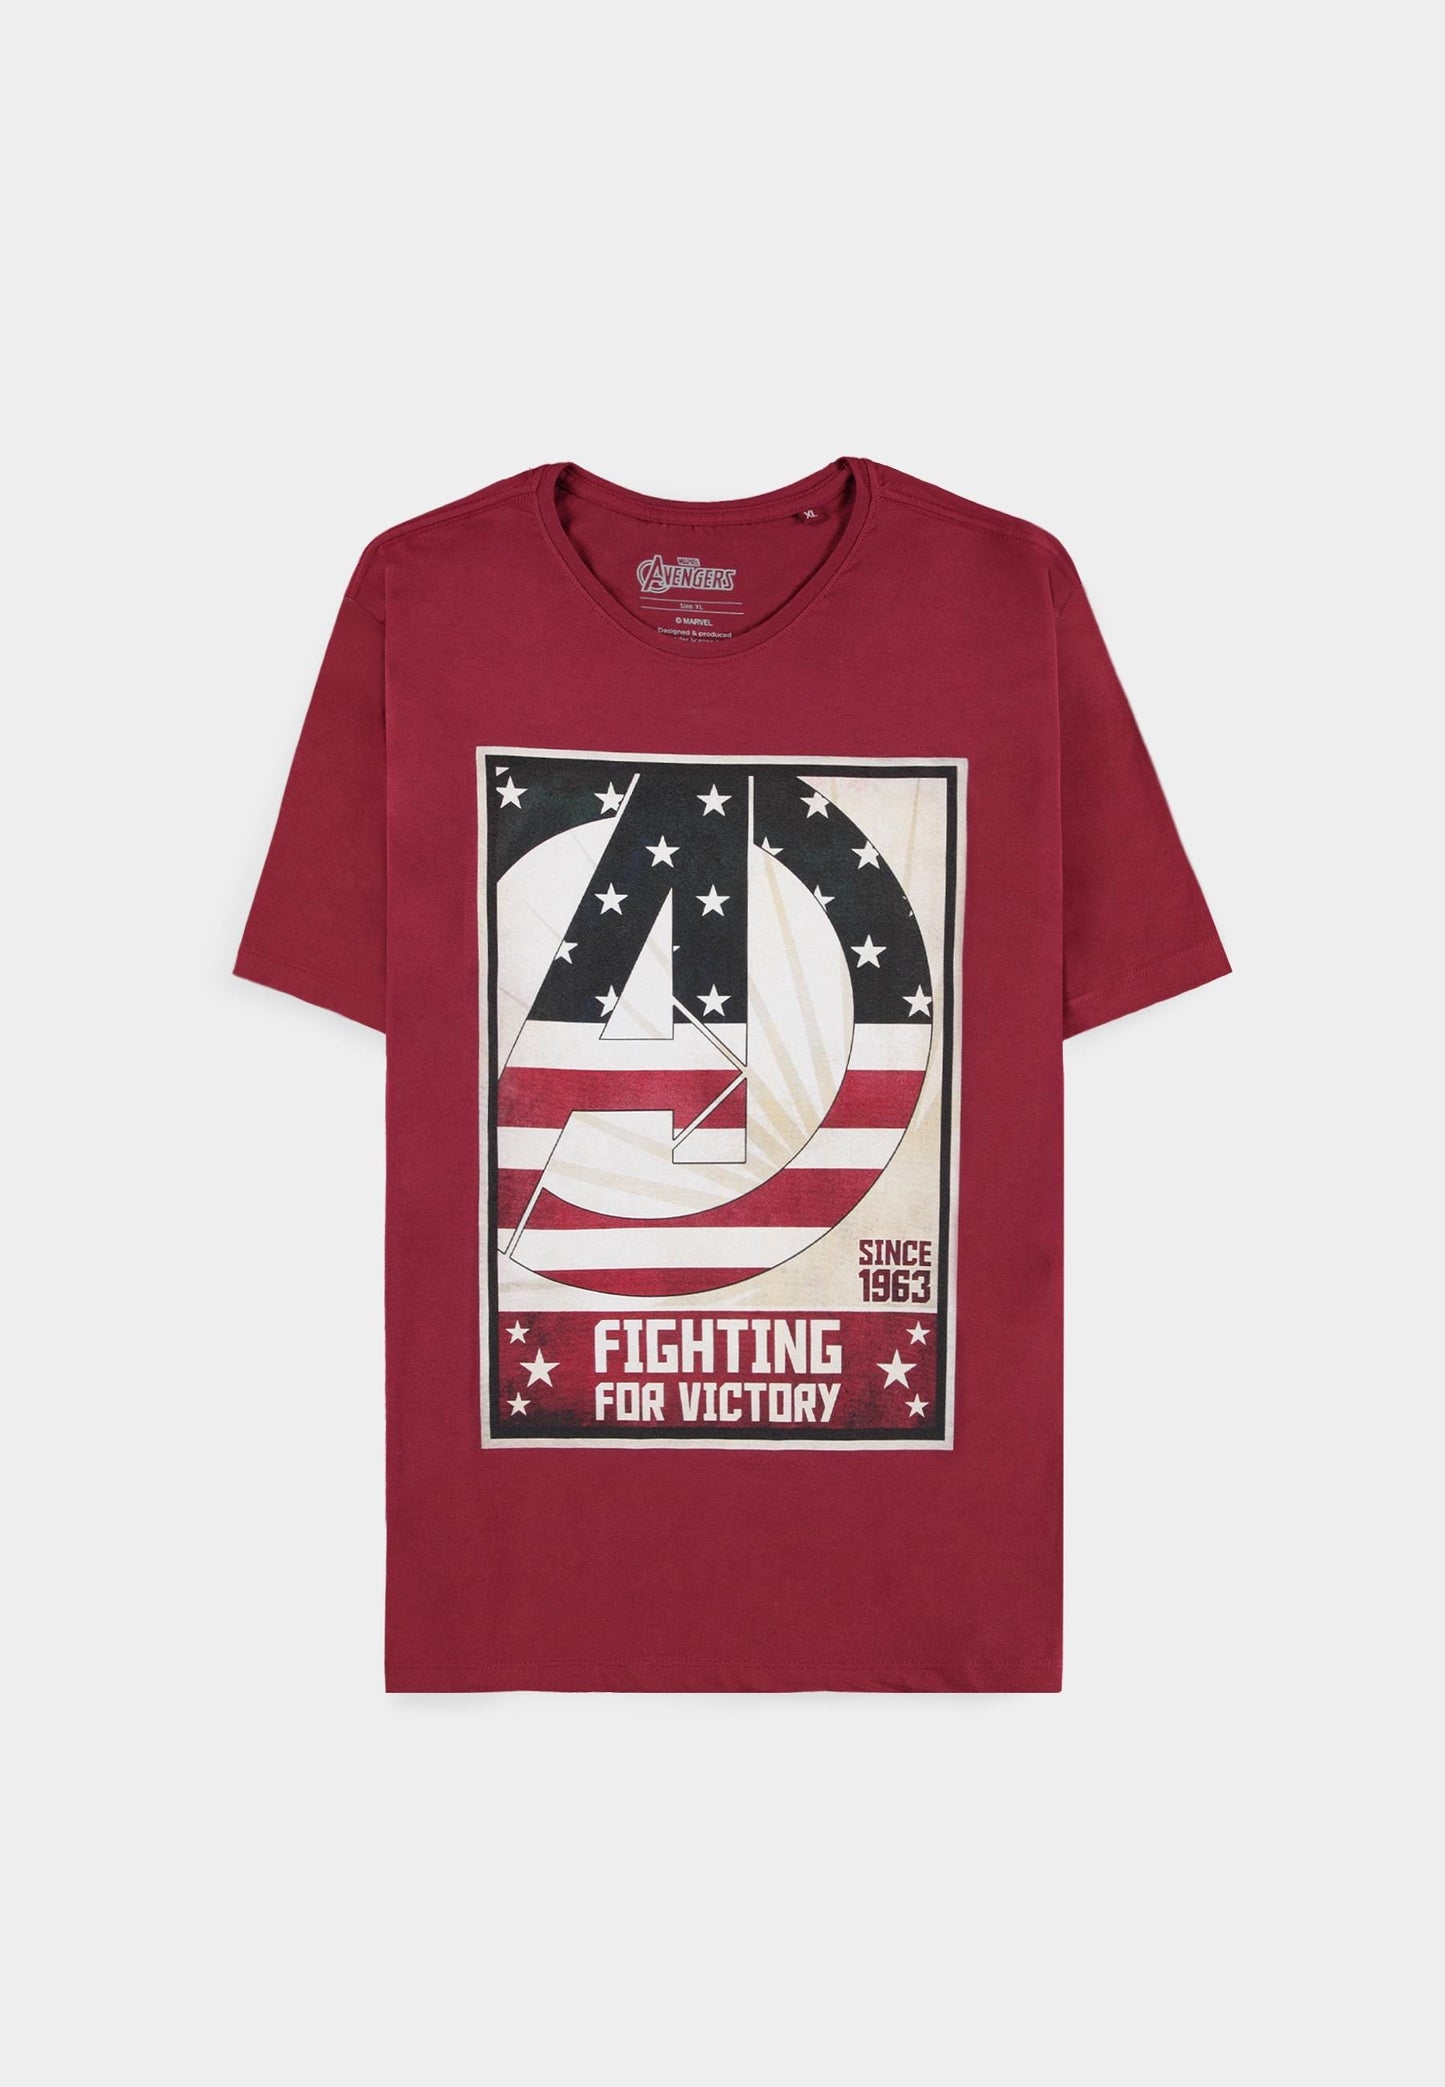 Avengers - Fighting For Victory - Men's Short Sleeved T-shirt